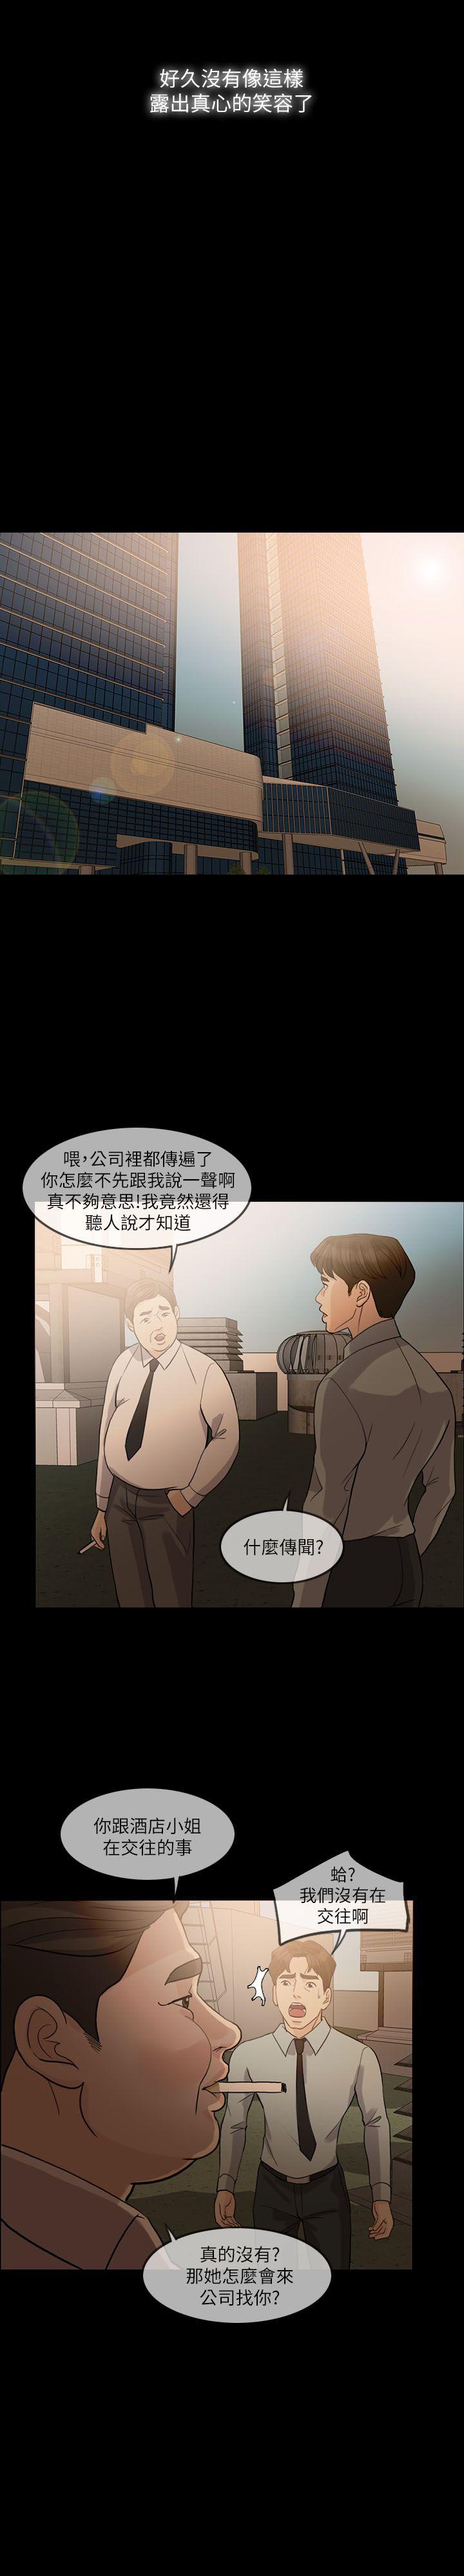 韩国污漫画 失控的愛 第13话 13